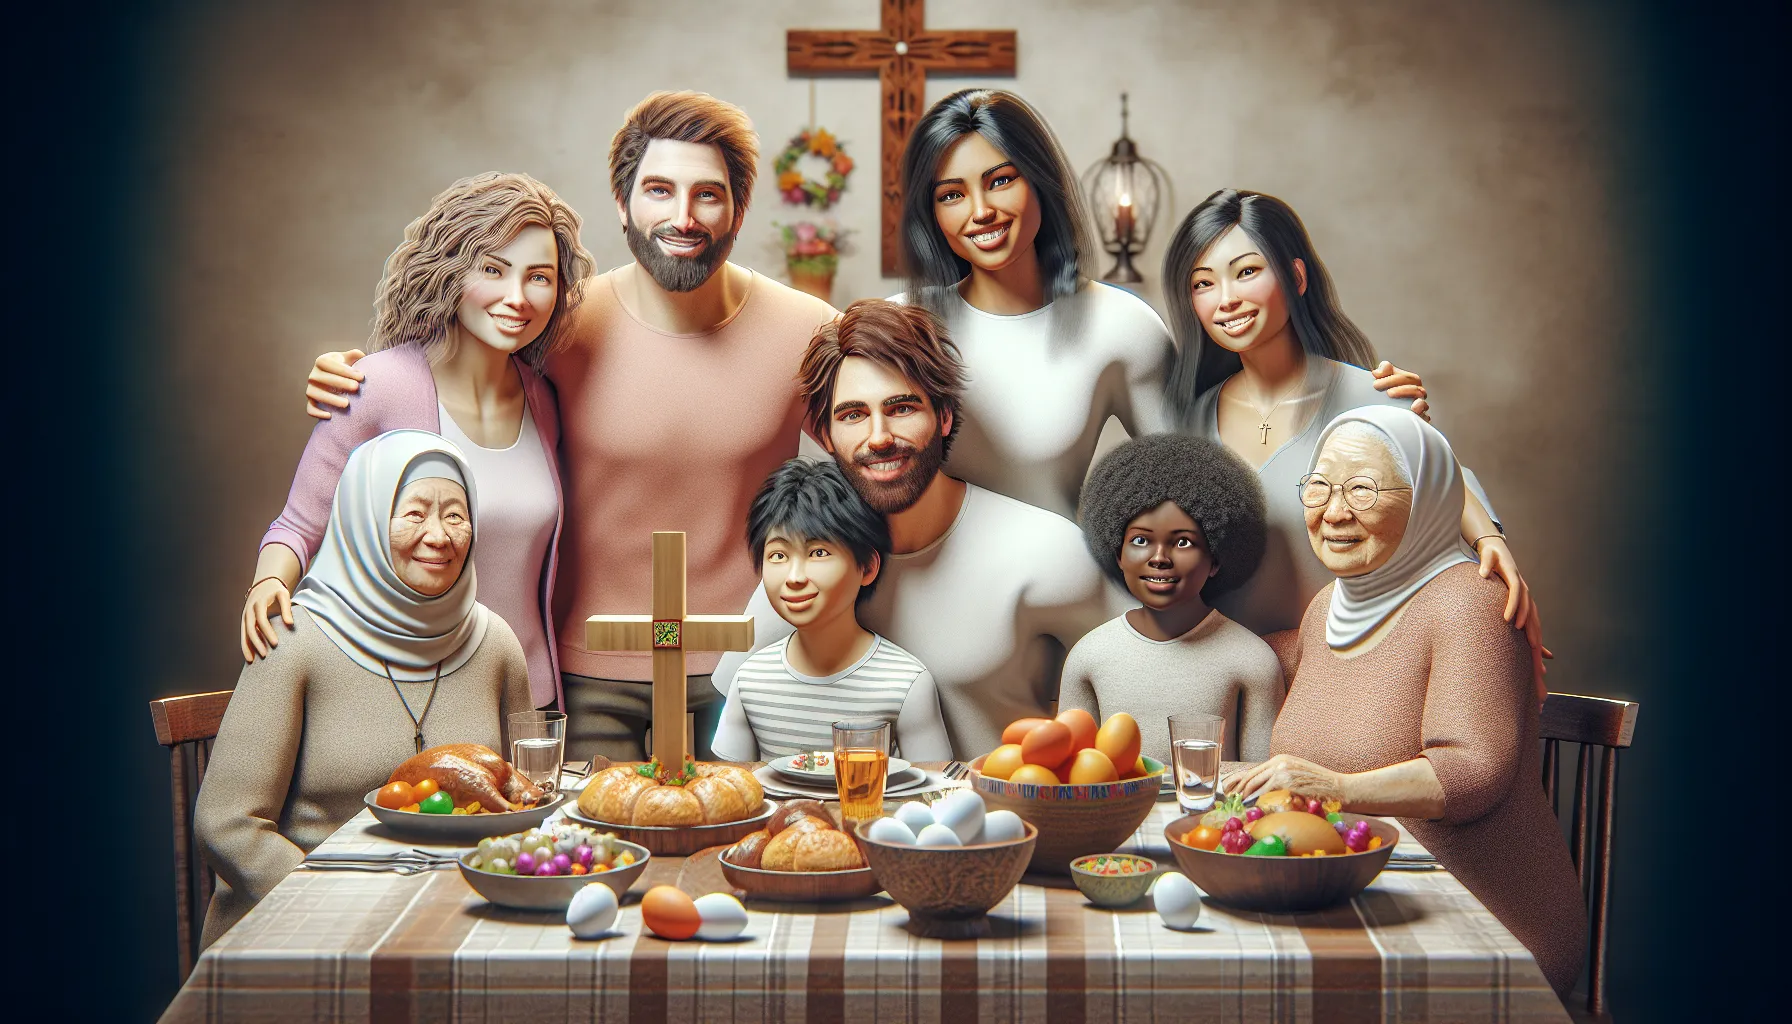 Imagen de una familia cristiana celebrando la Pascua juntos en una mesa con comida tradicional y una cruz de madera decorativa.